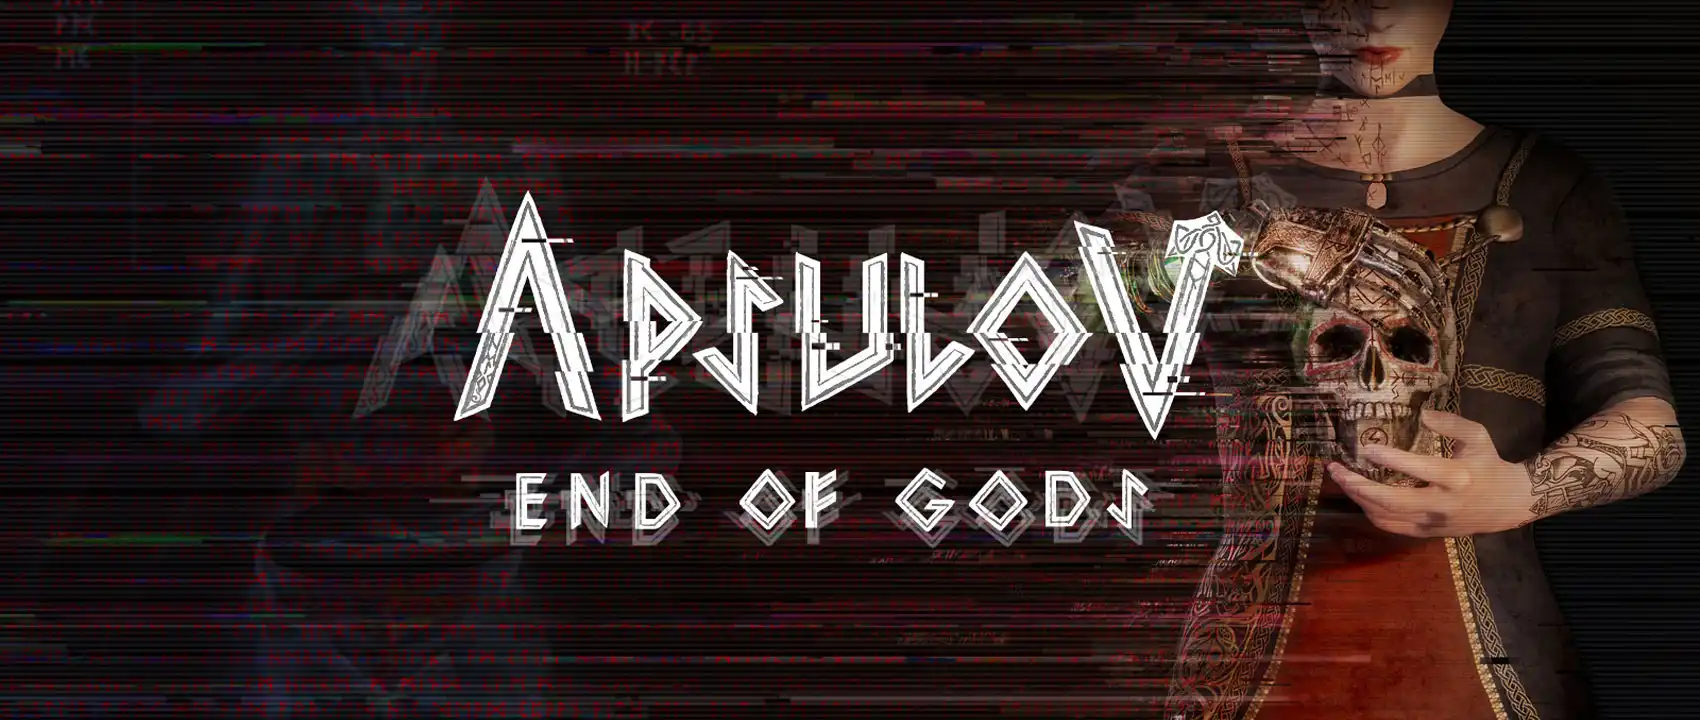 بازی Apsulov End of Gods برای PS4